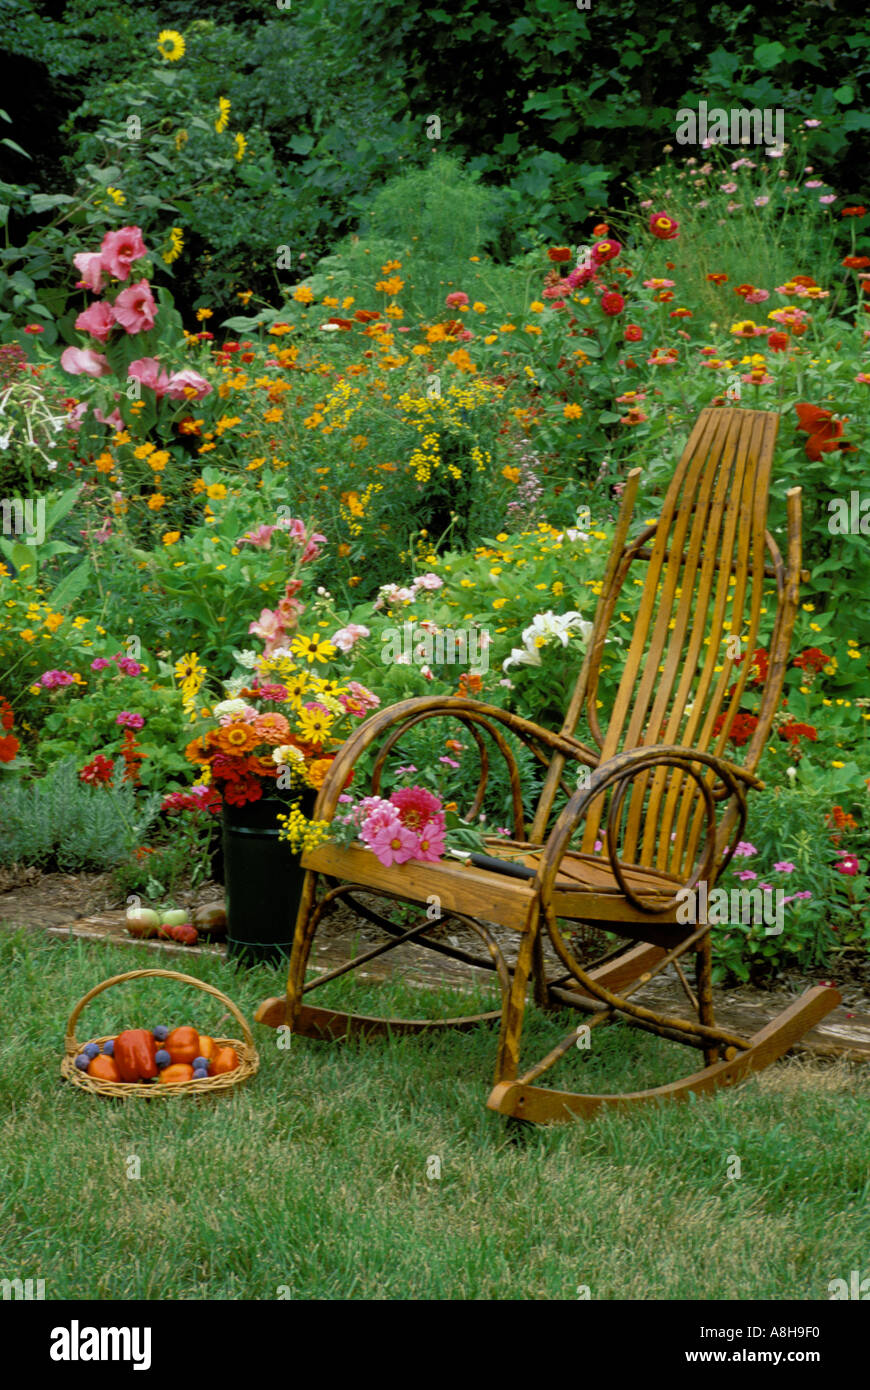 Dalle due nonne luogo-- Bentwood sedia a dondolo nel giardino fiorito con un tessuto cesto pieno di frutta fresca e fiori freschi recisi Foto Stock